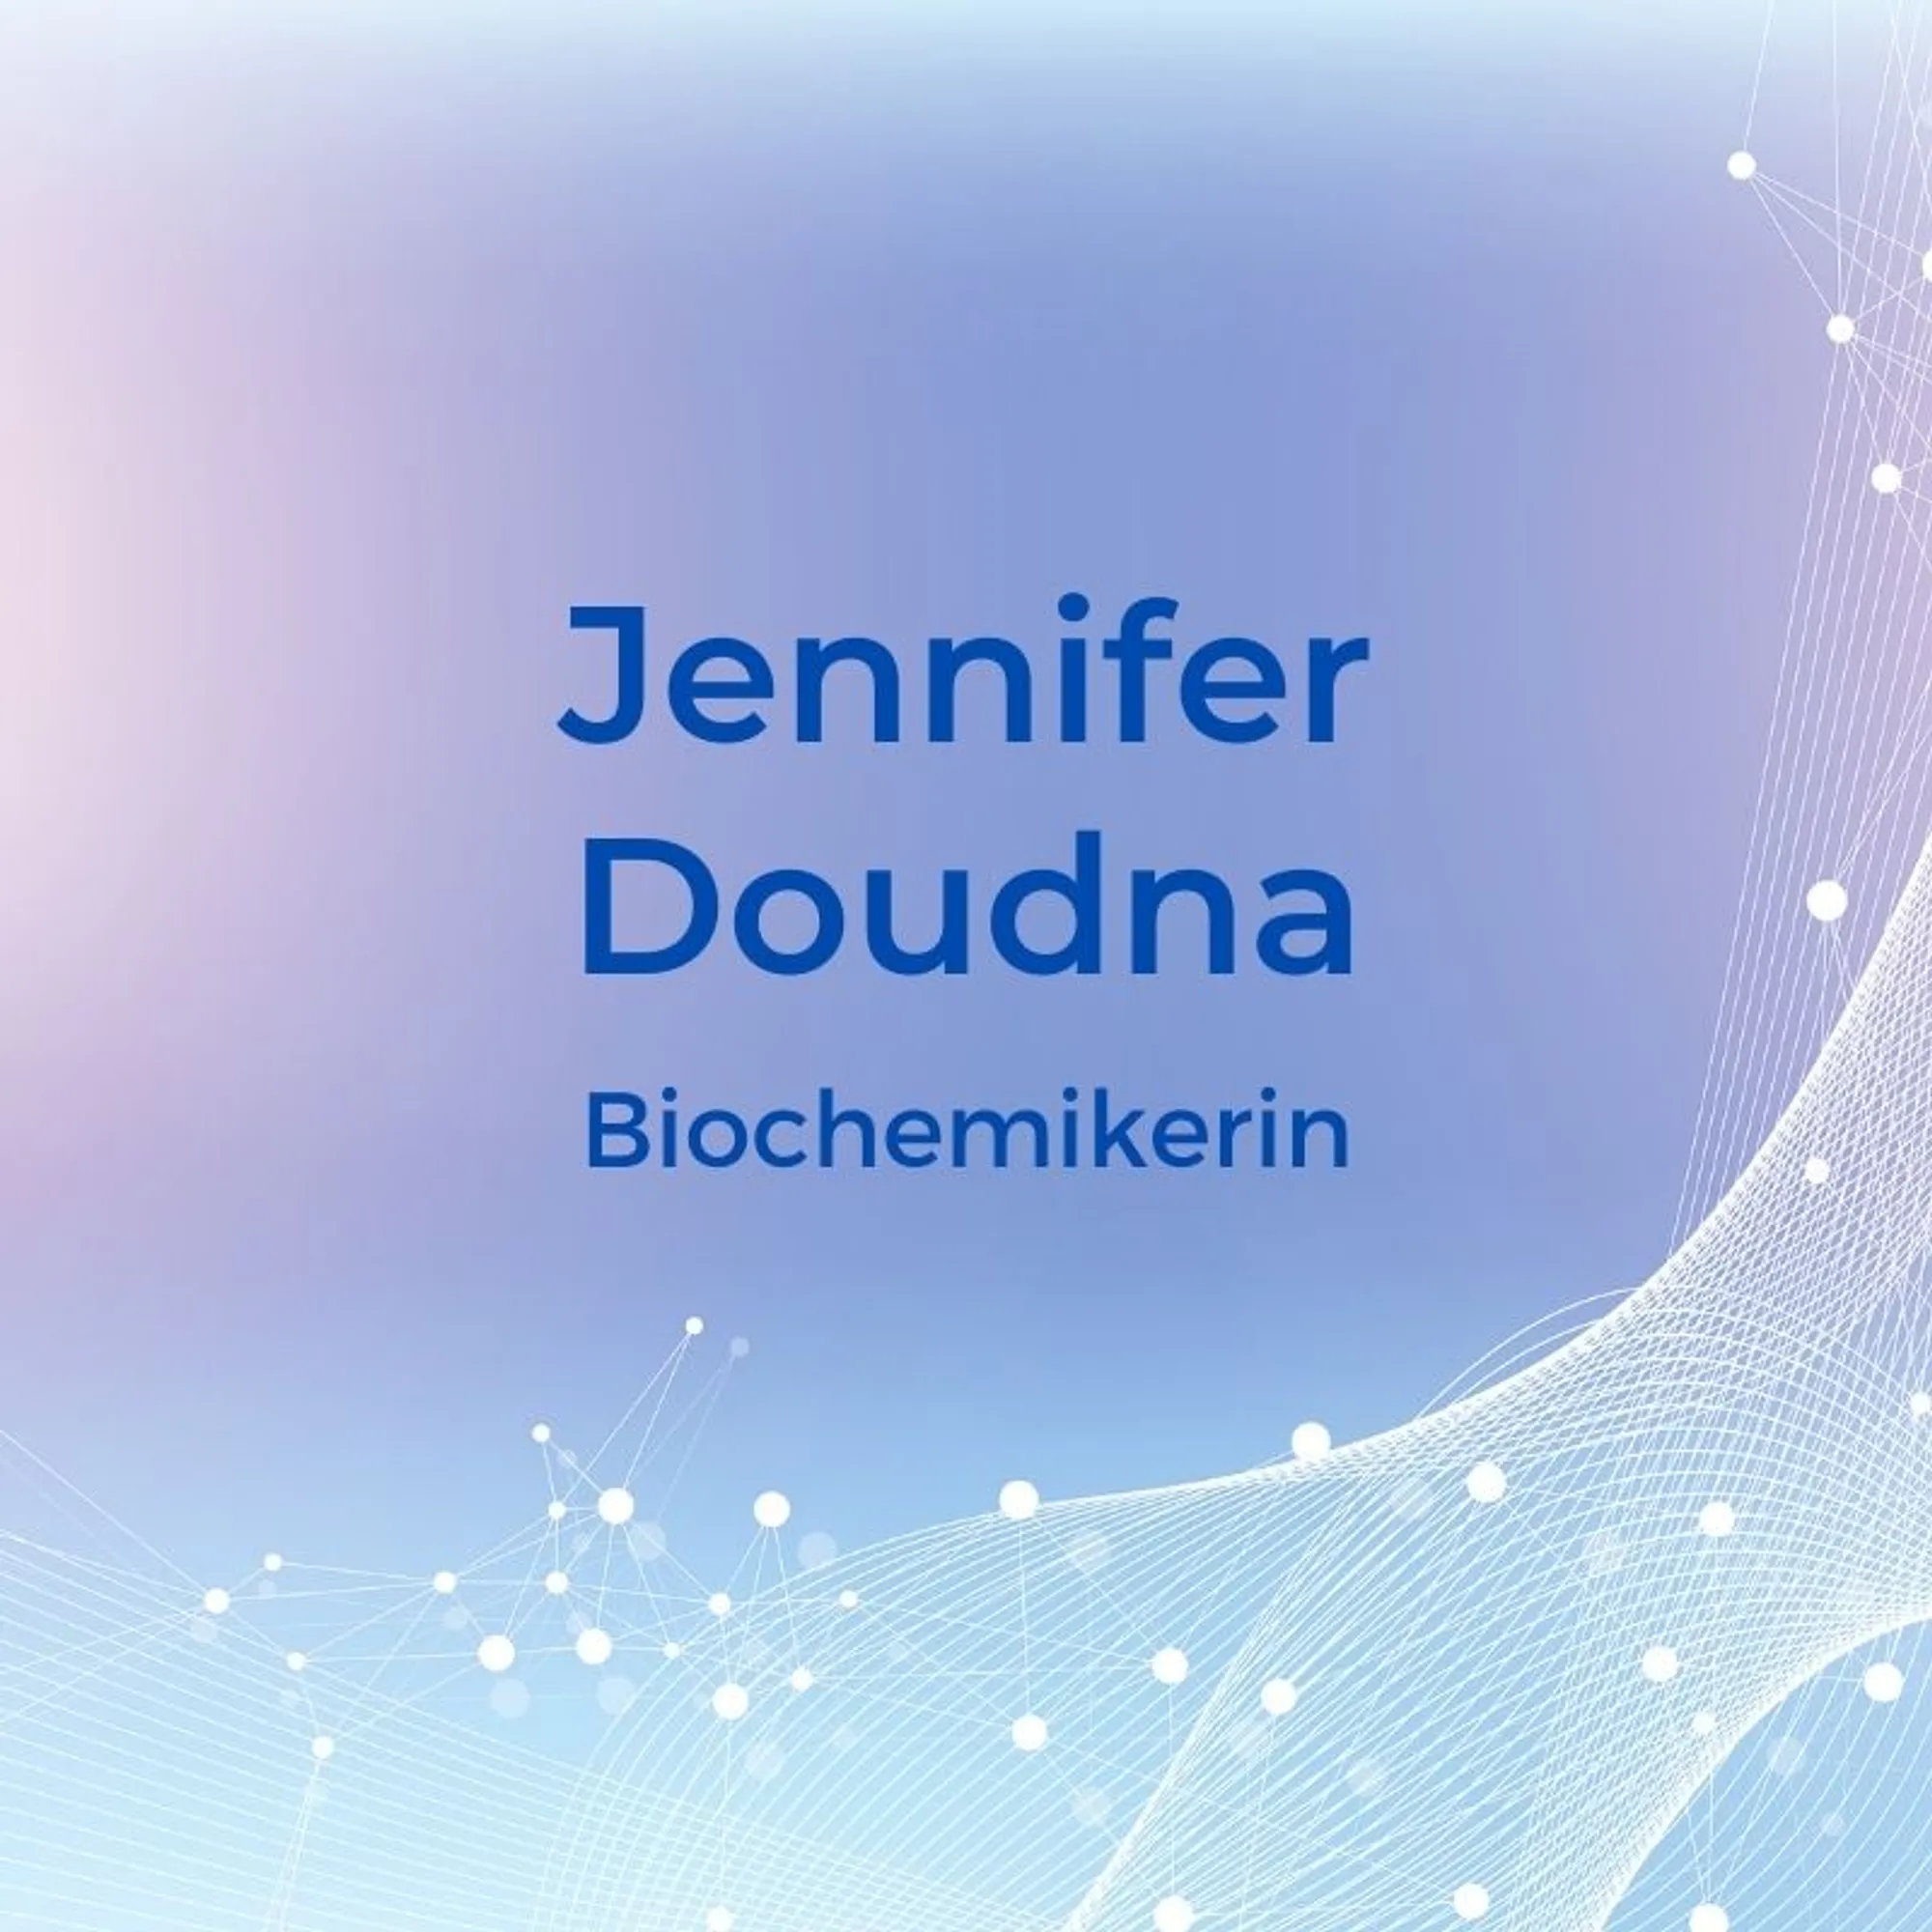 6. Jennifer Doudna (*1964) – BiochemikerinIm Jahr 2012 veröffentlichte die US-Amerikanern Jennifer Doudna zusammen mit der Genetikerin Emmanuelle Charpentier eine grundlegende Arbeit zur Gen-Schere Crisp. Dabei handelt es sich um eine Methode der Gentechnologie, mit der einerseits Designer-Babys entstehen können, andererseits aber auch Krankheiten wie Mukoviszidose, Chorea Huntington und HIV bekämpft werden können. 2020 wurden die beiden für diese Entdeckung mit einem Nobelpreis belohnt.
